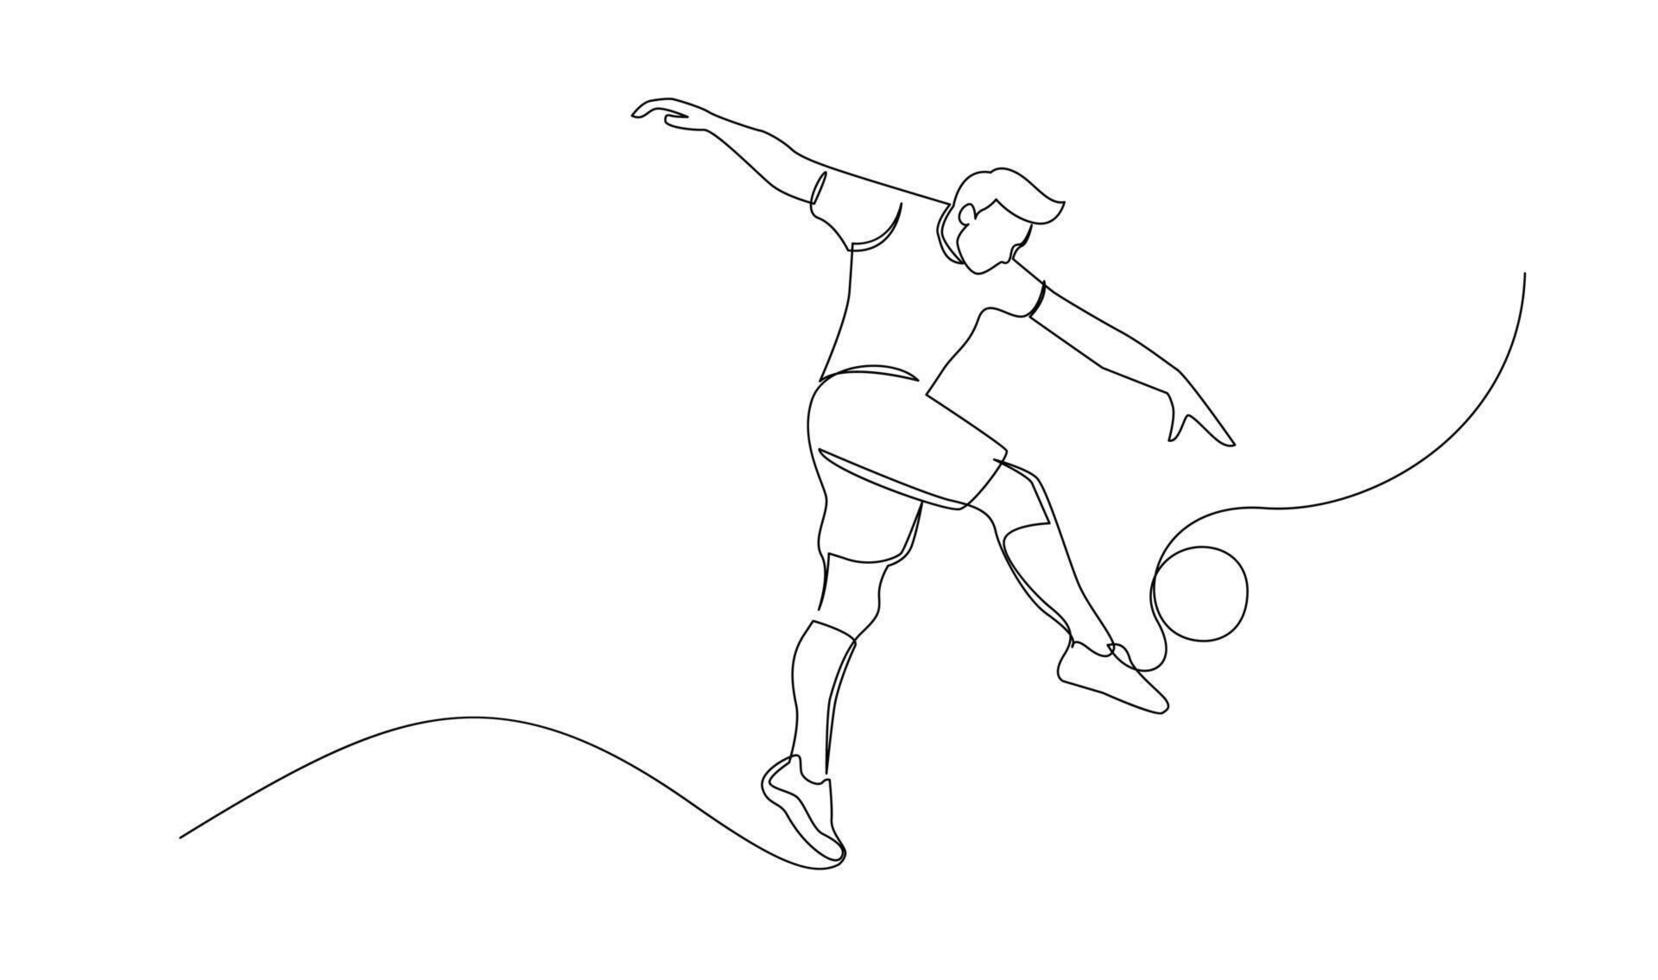 continuo linea disegno di calcio giocatore saltare e volare per calciando sfera. singolo uno linea arte di giovane uomo giocando calcio palla vettore